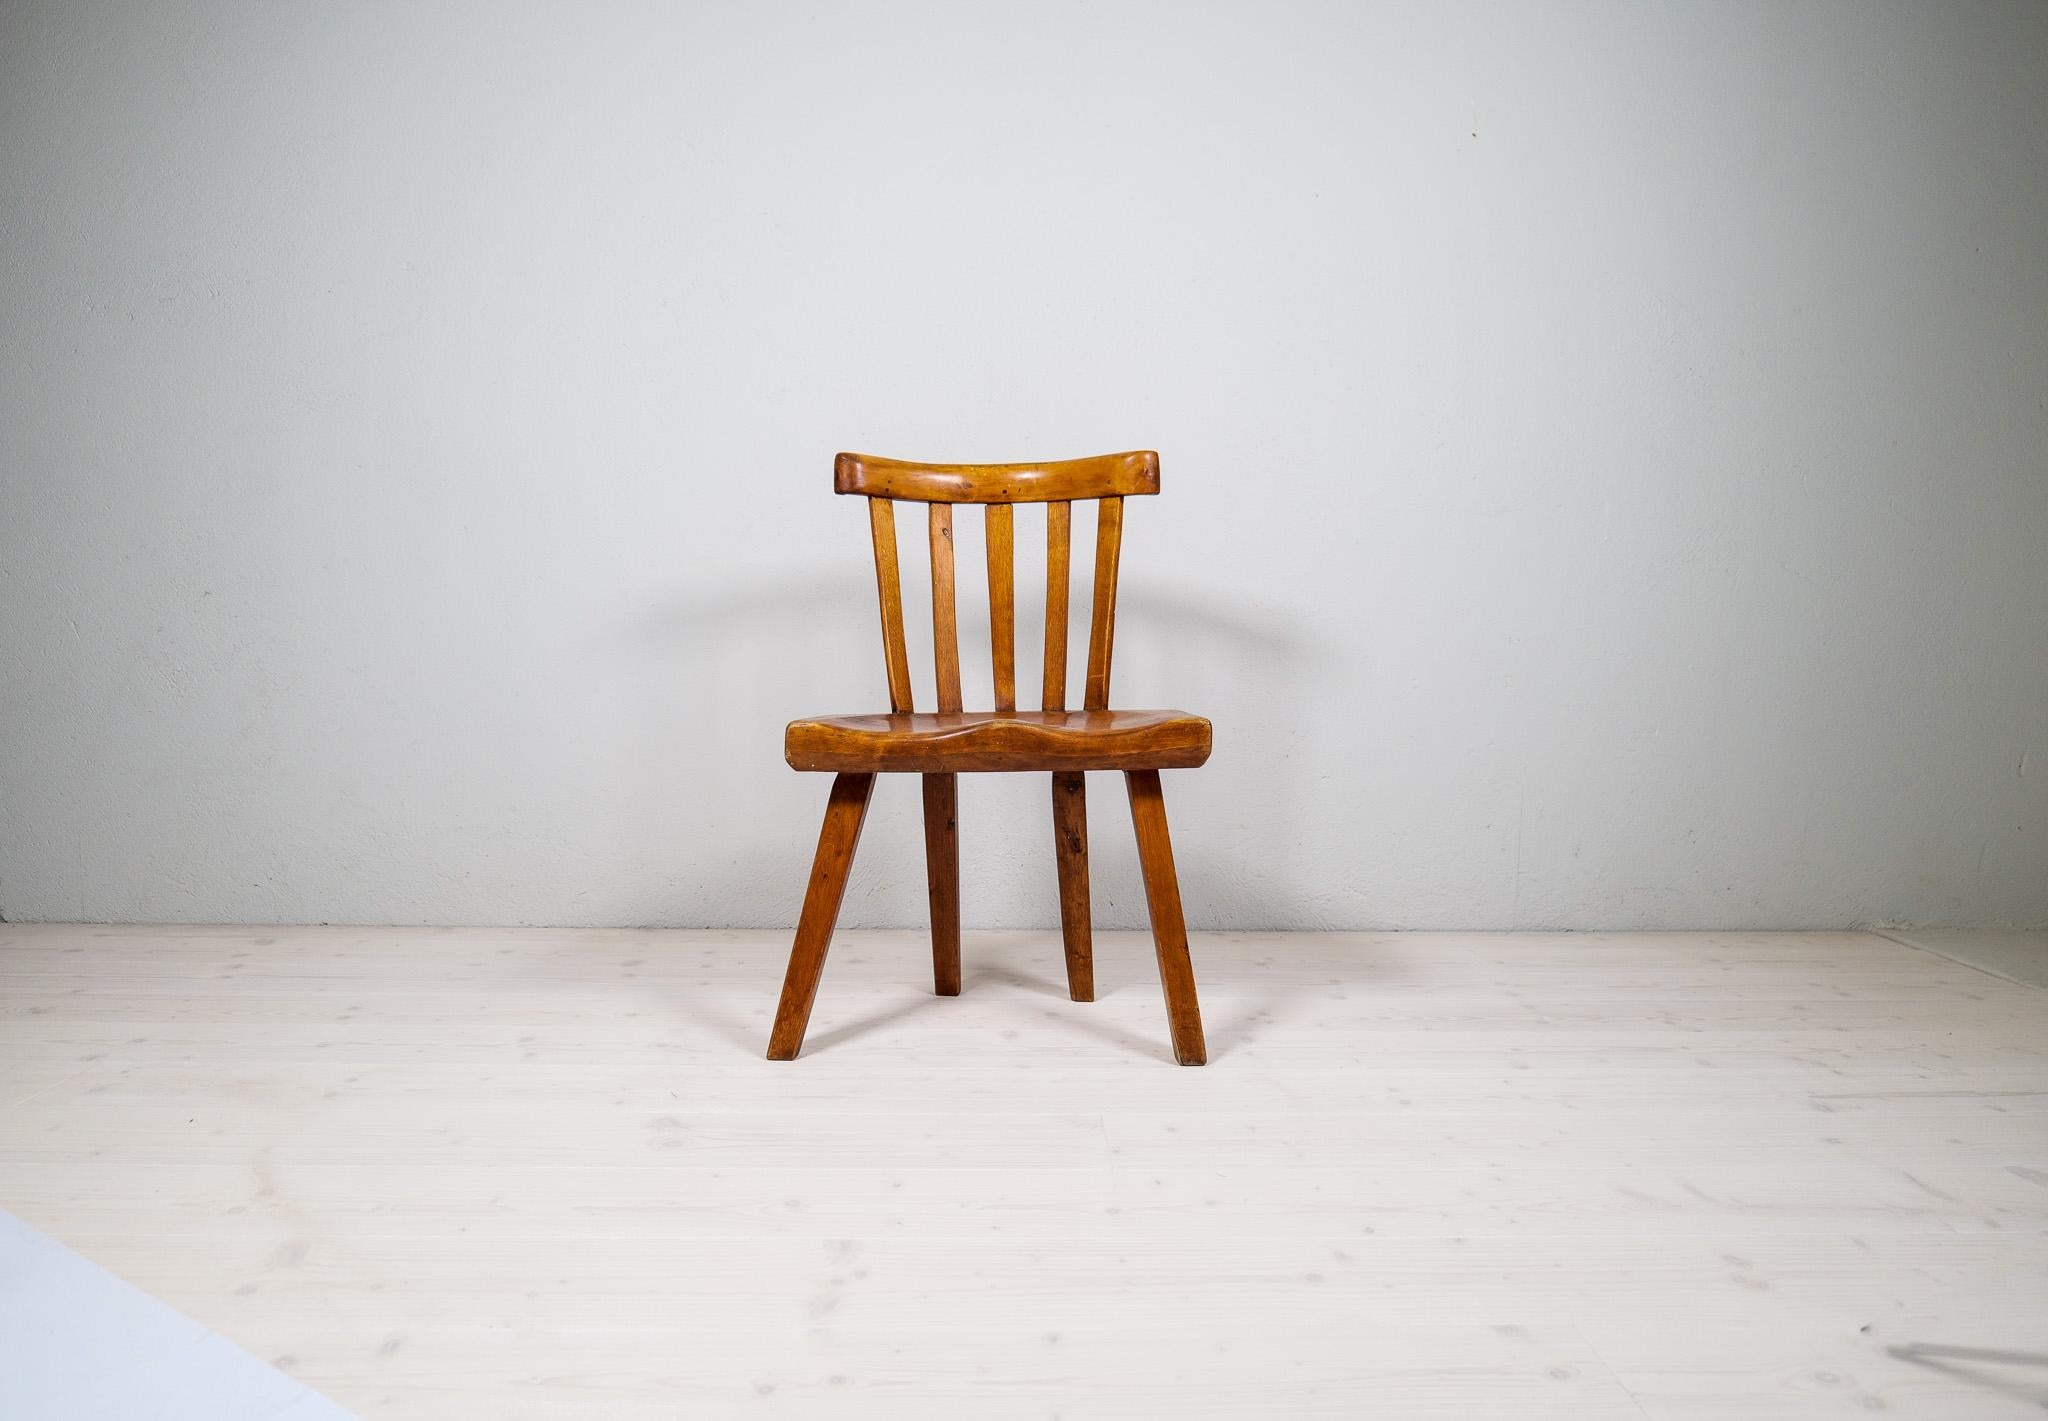 L'art populaire made in Sweden sous son meilleur jour. Cette chaise aux formes et à la patine très attrayantes. Fabriquée à la fin du XIXe siècle, cette chaise est une pièce donnée à toute maison moderne qui veut avoir quelque chose qui sort de